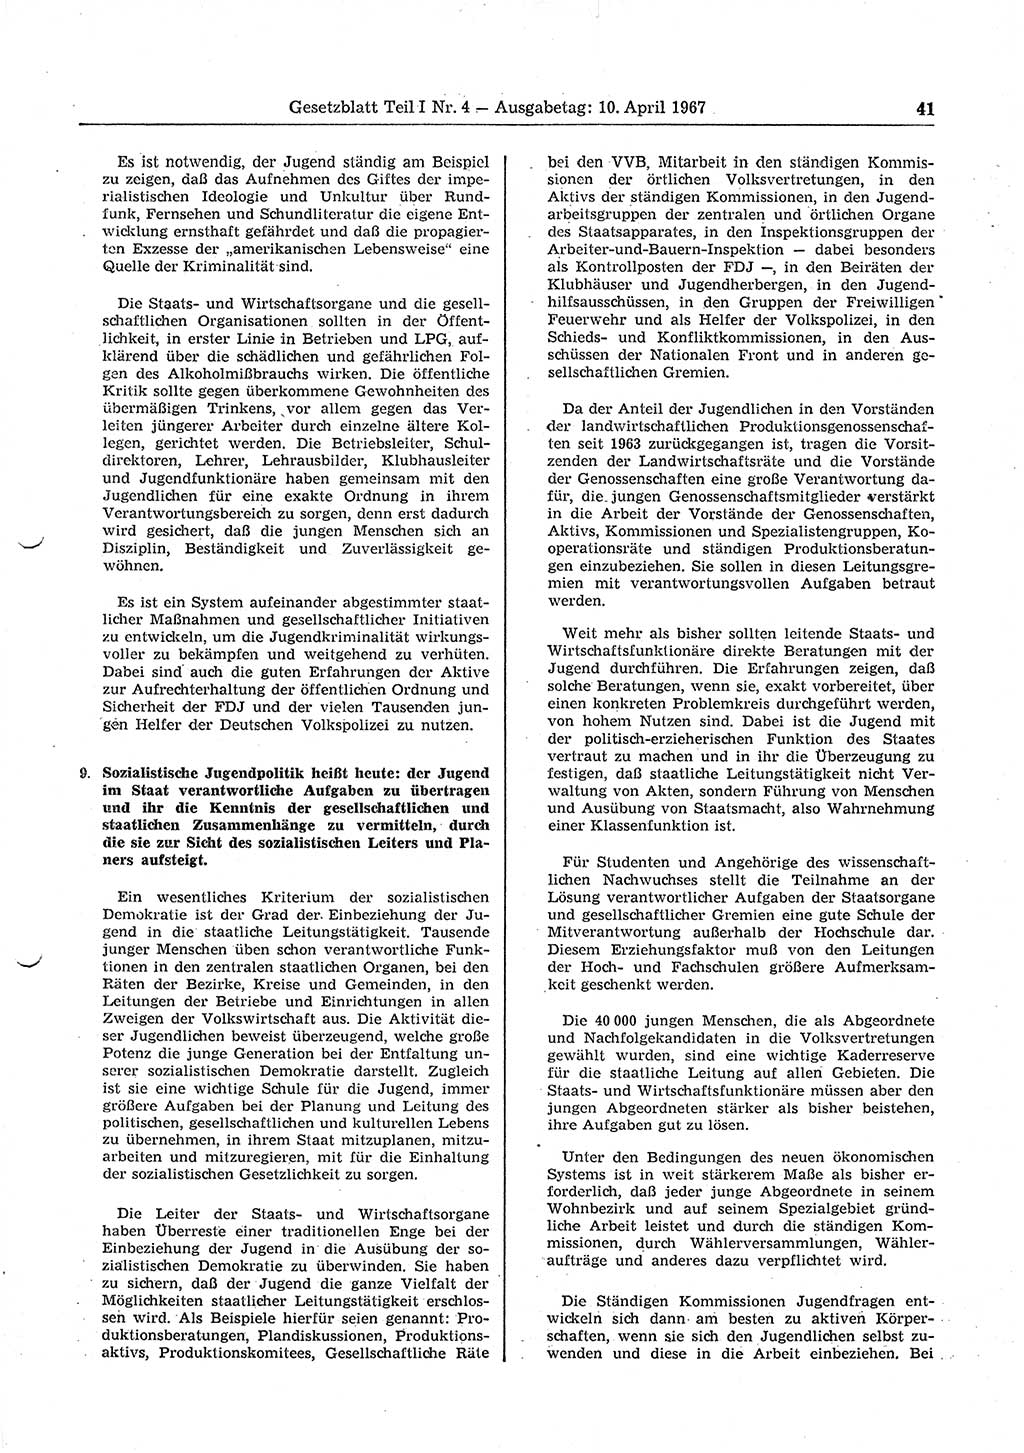 Gesetzblatt (GBl.) der Deutschen Demokratischen Republik (DDR) Teil Ⅰ 1967, Seite 41 (GBl. DDR Ⅰ 1967, S. 41)